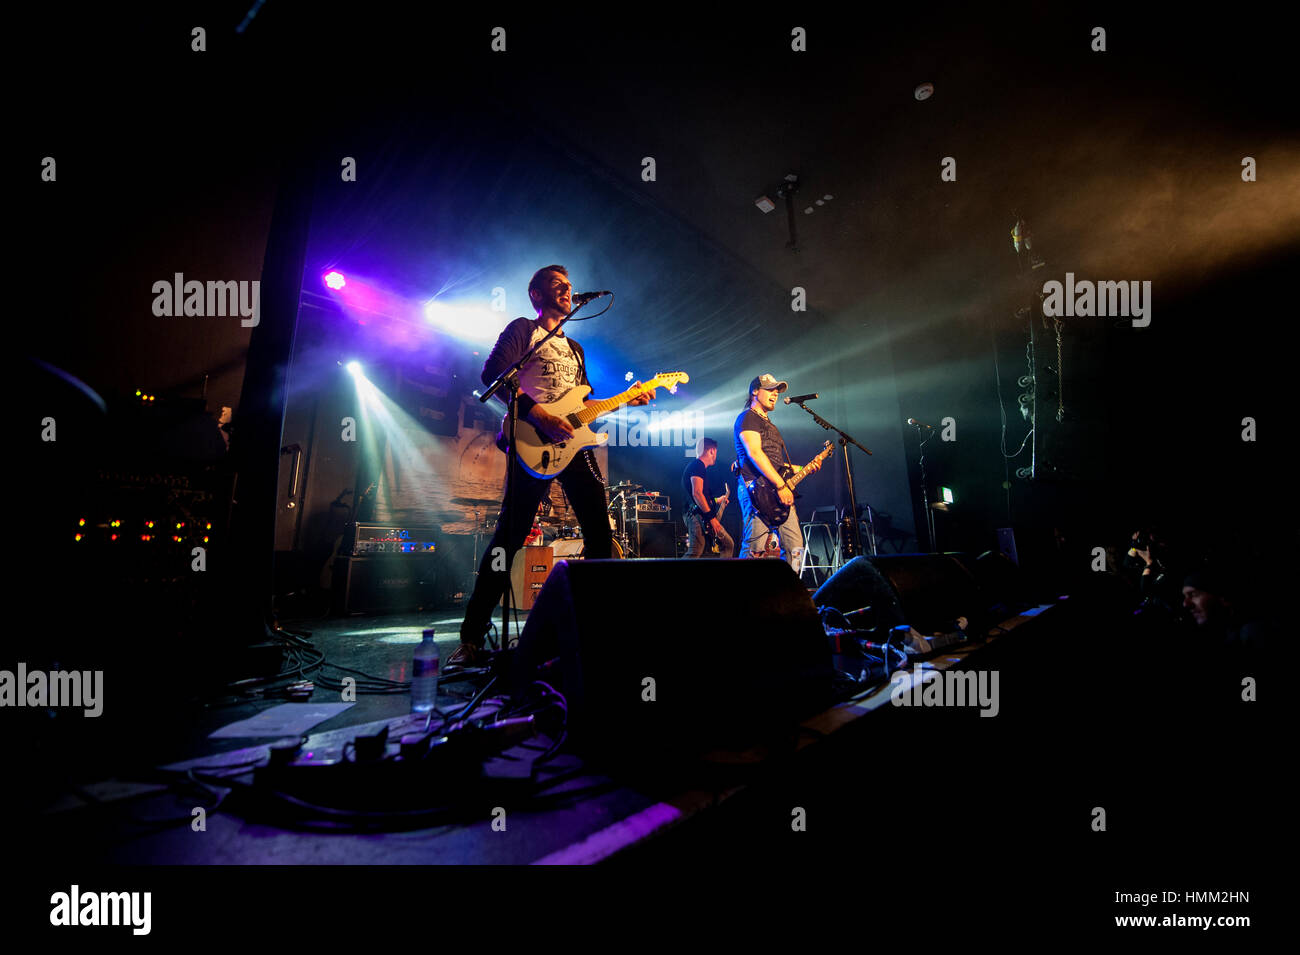 Rock Band casse Pierre effectuer à O2 Academy Birmingham. Le guitariste Chris Davis est une guitare blanche (centre gauche). Banque D'Images